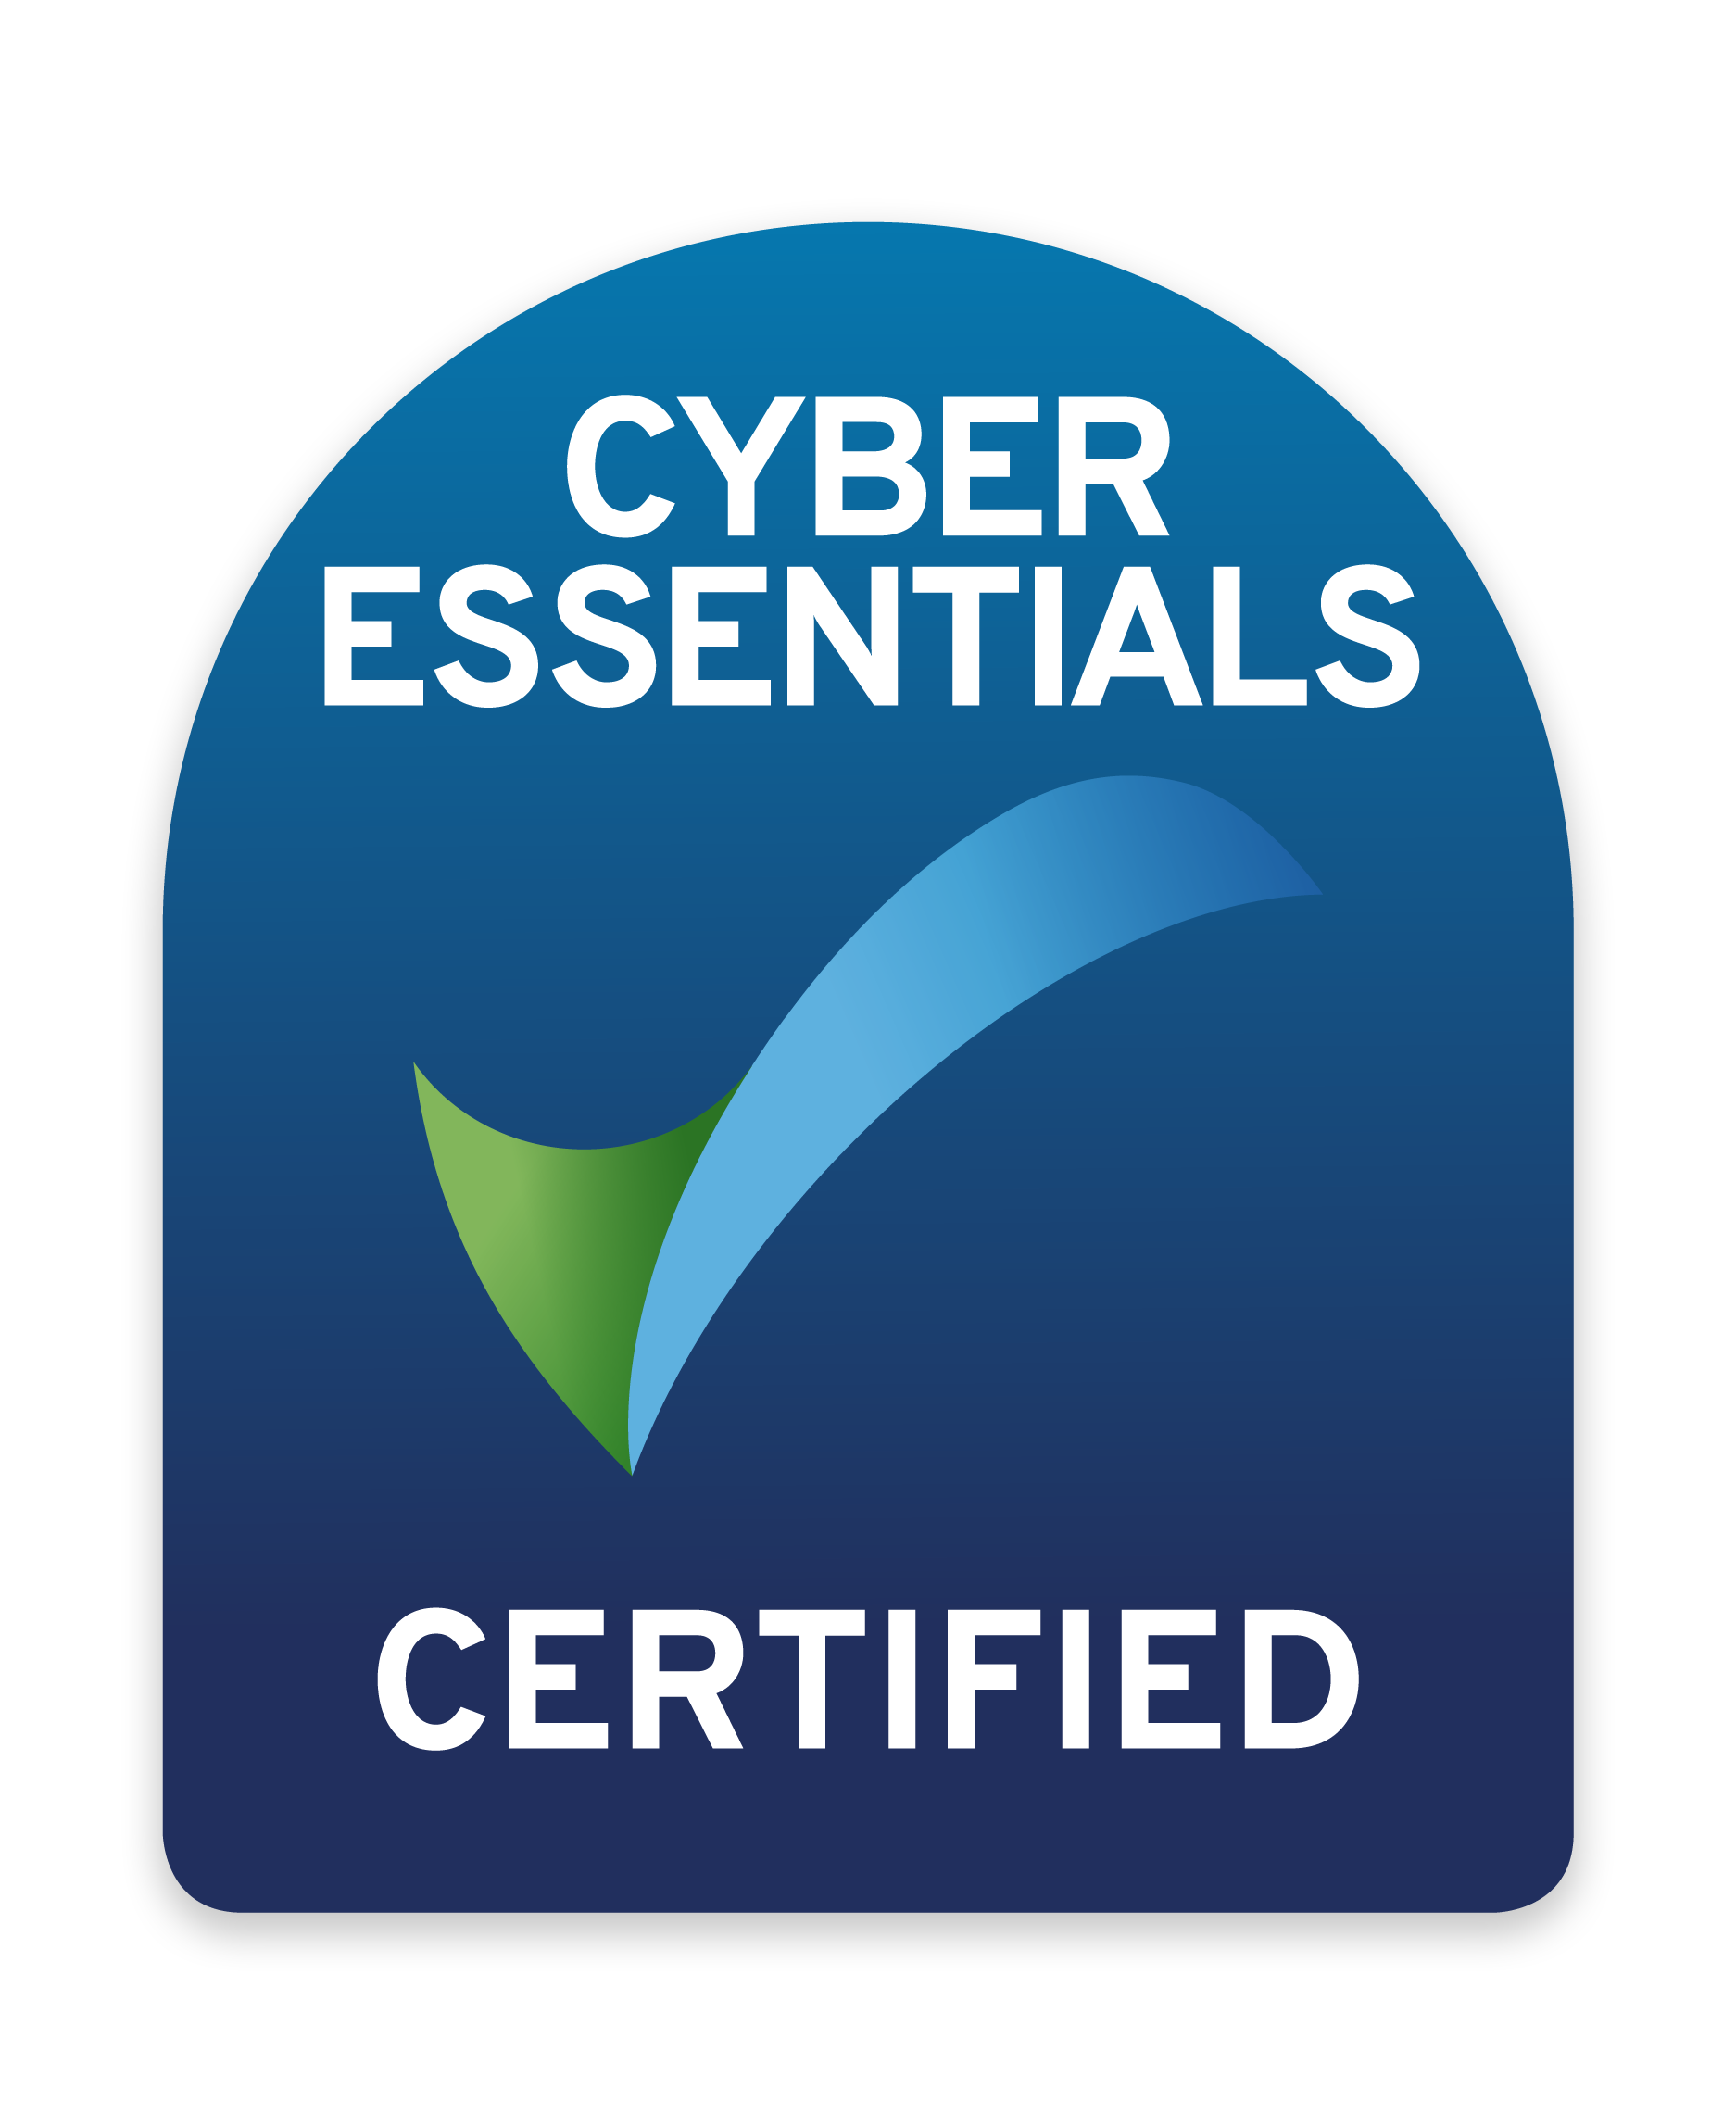 IMSM MY Cyber Essentials Certification